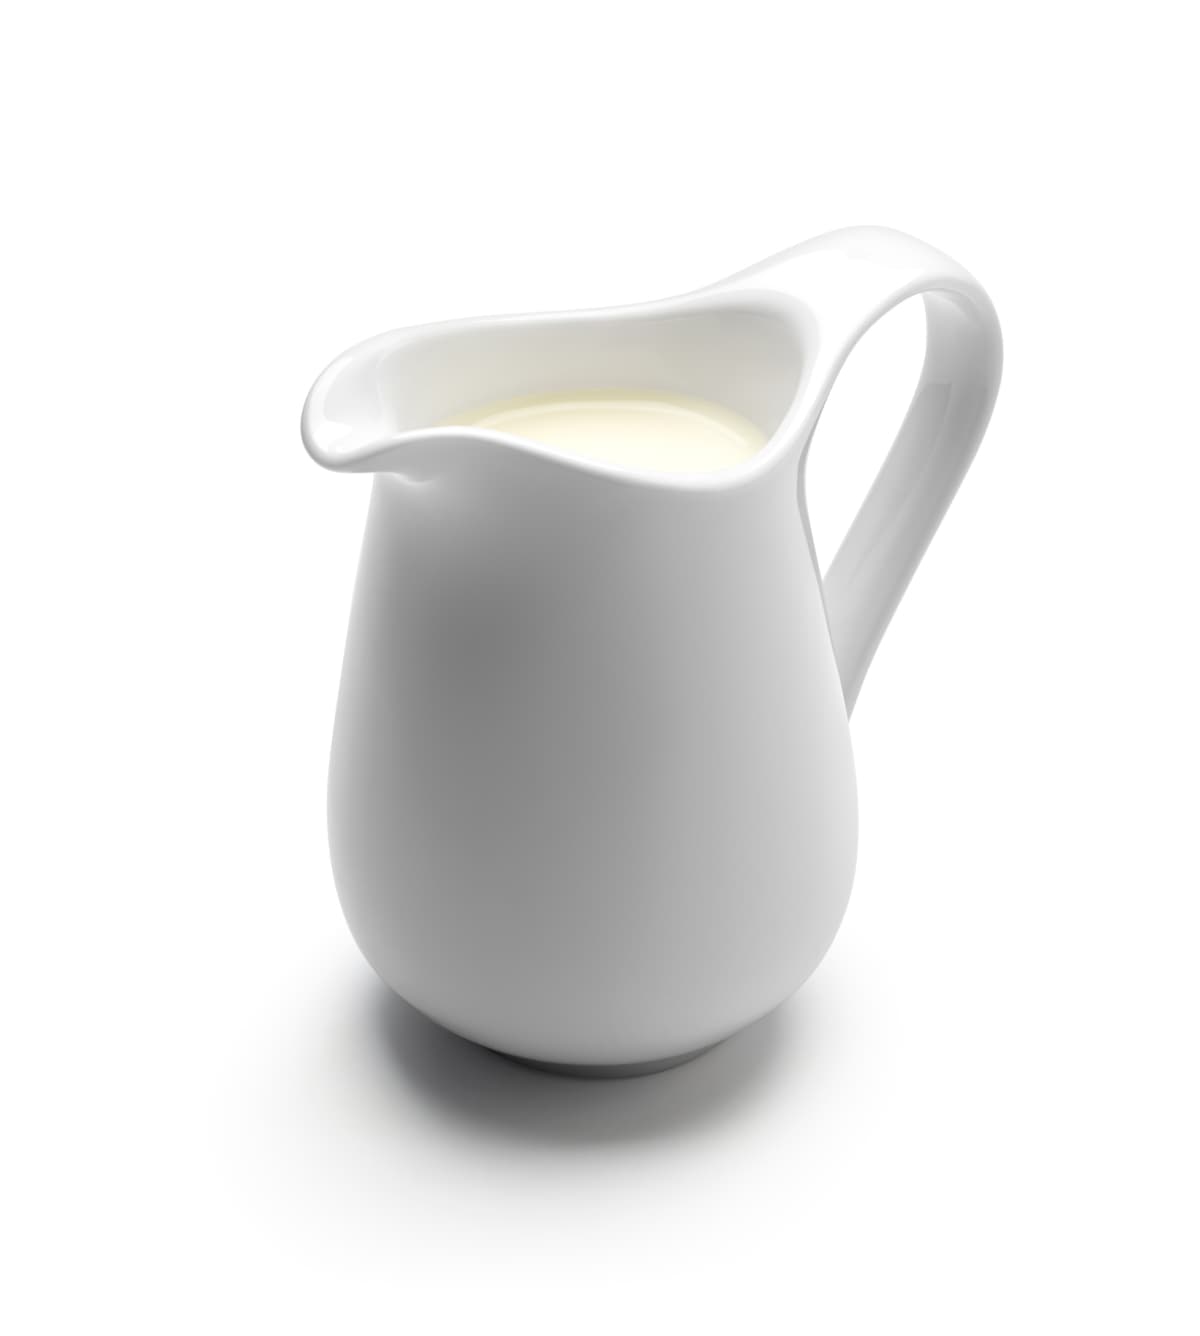 Milk in a white pitcher